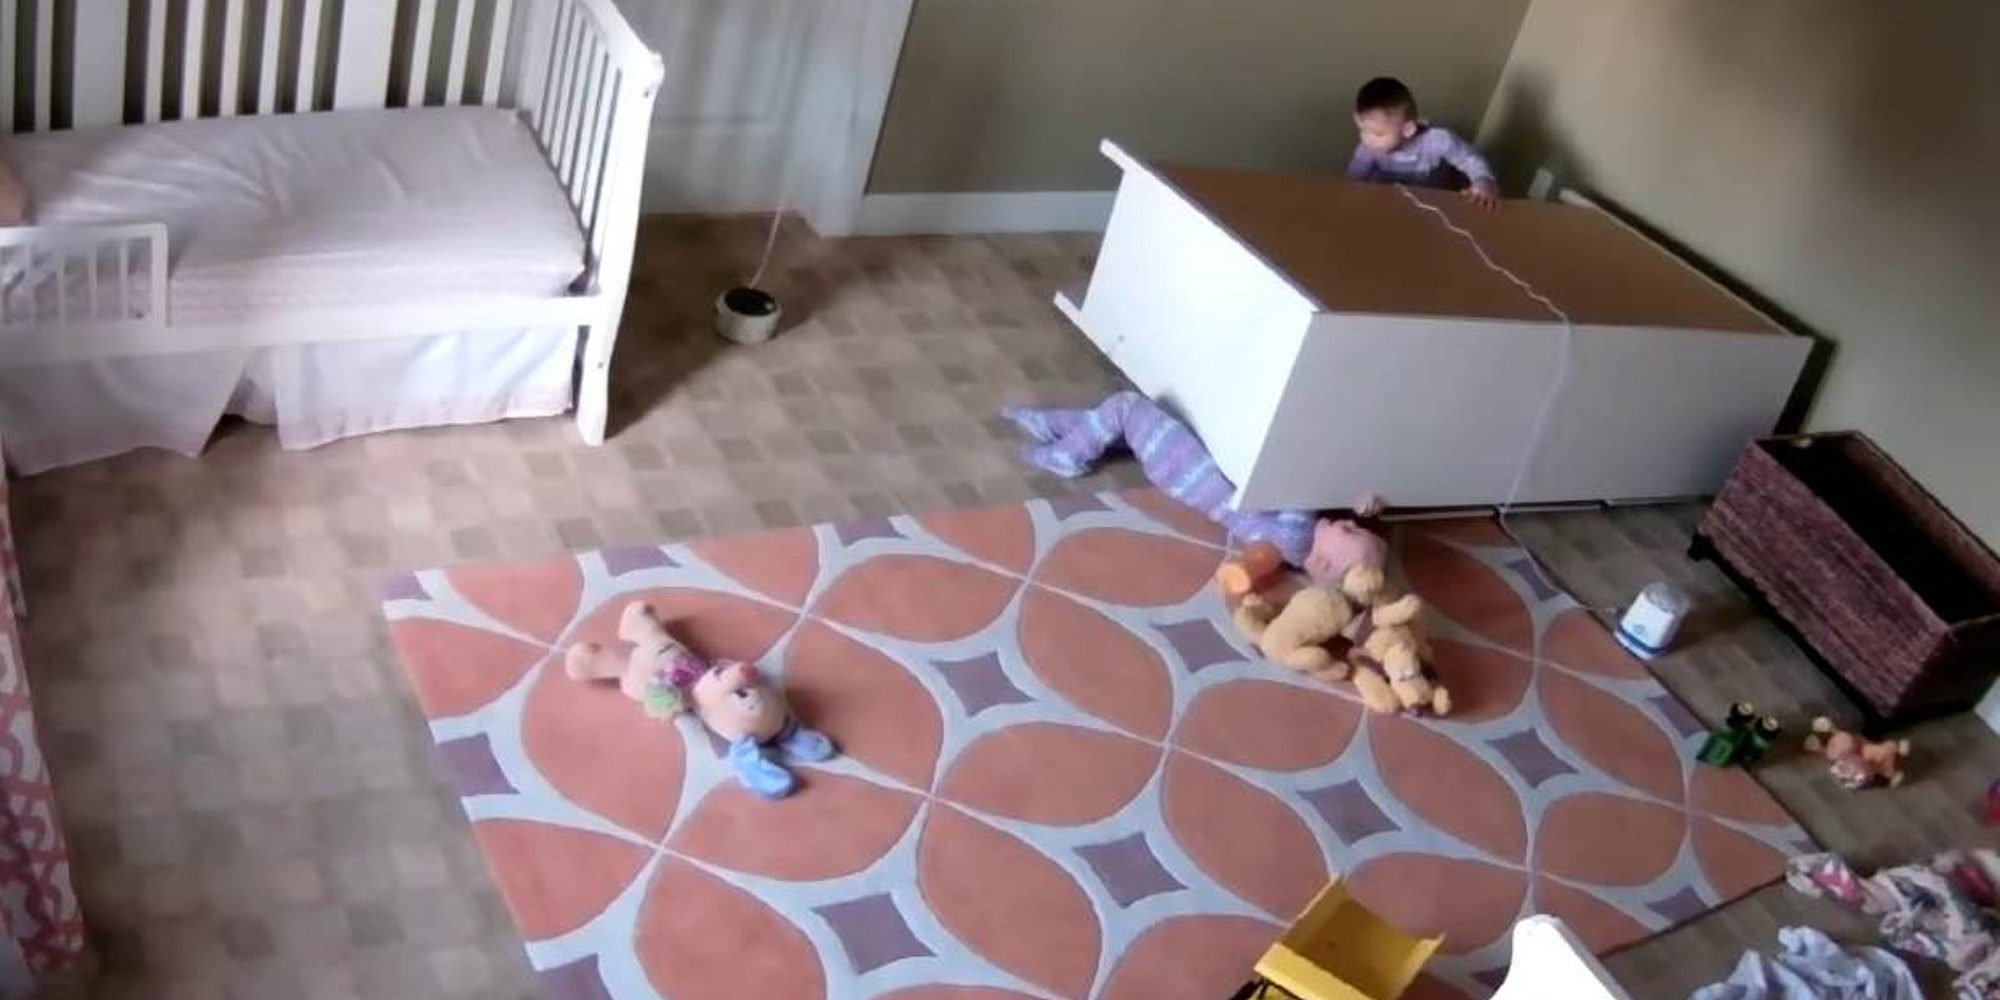 Un niño salva a su hermano gemelo de morir aplastado después de caer un armario